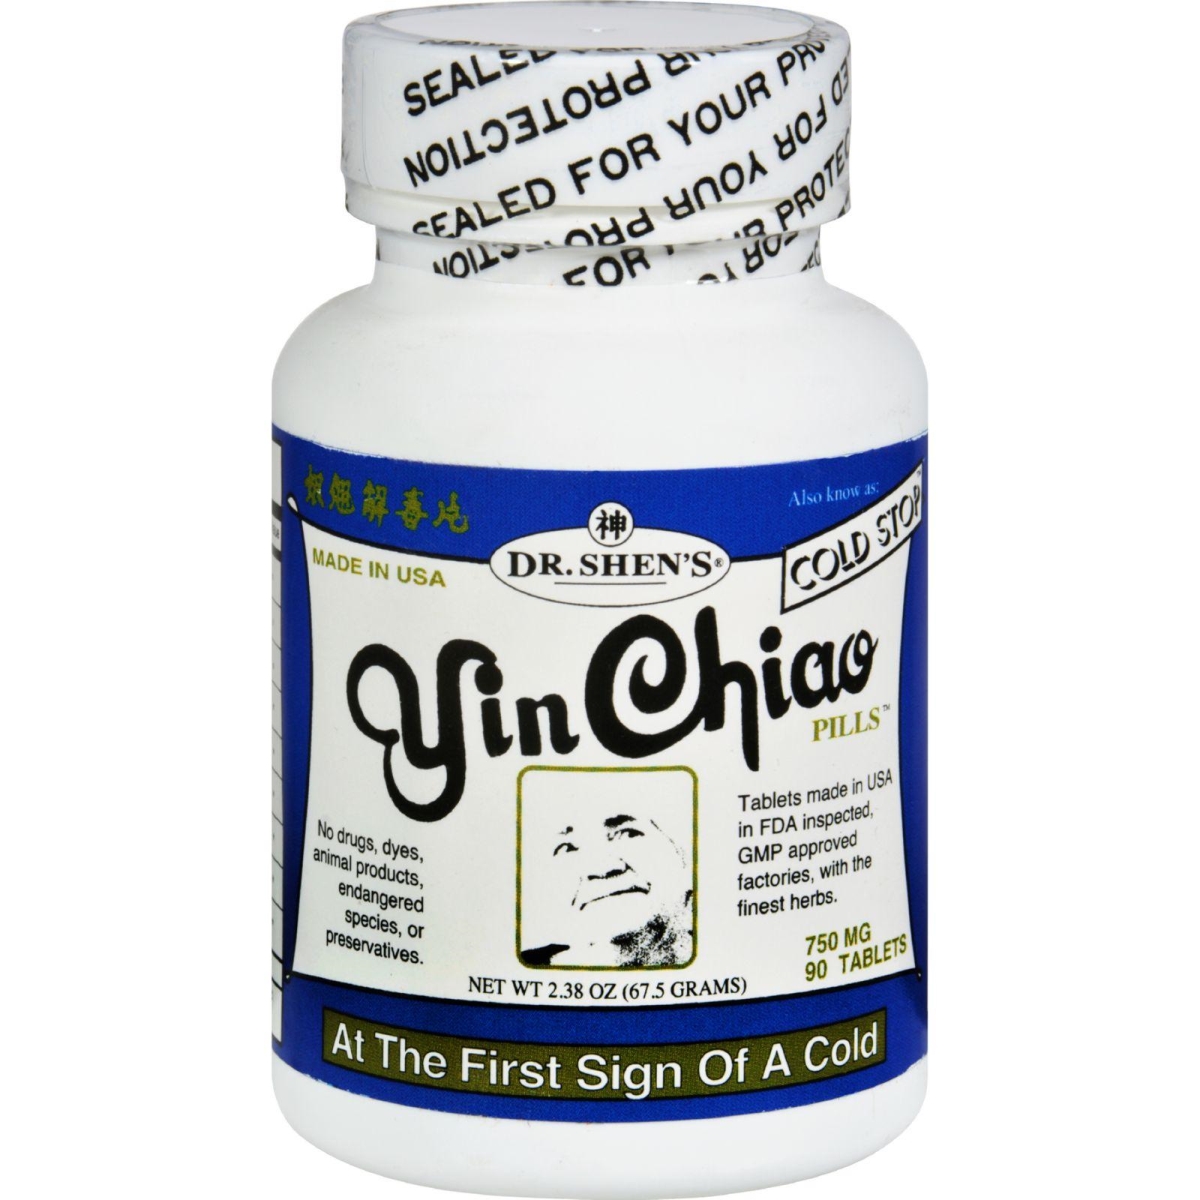 Hg0934935 750 Mg Colds & Flu Yin Chiao, 90 Tablets